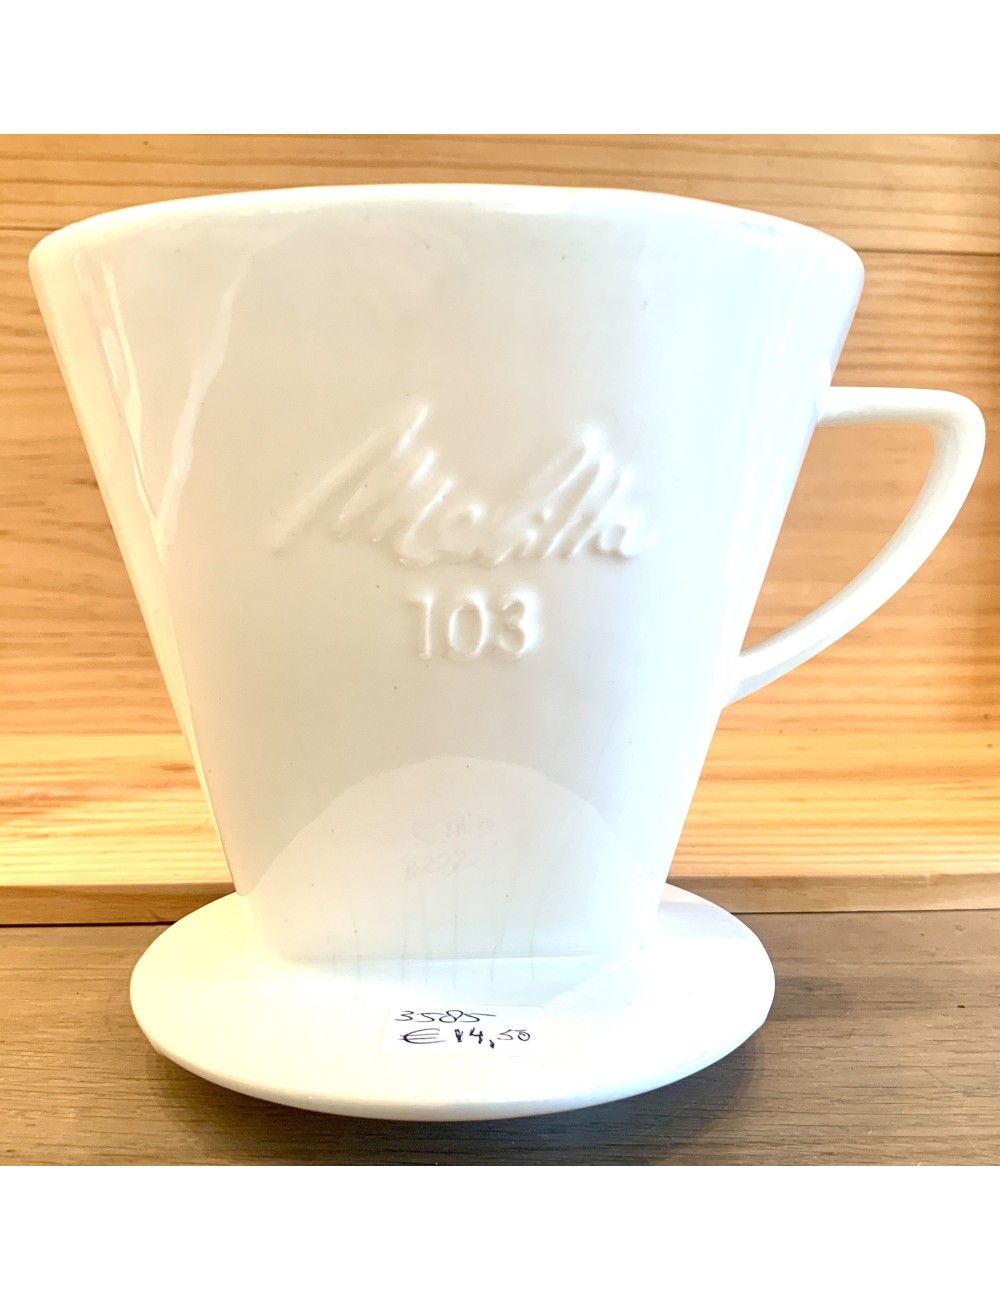 Filter / koffiefilter - MELITTA - wit - met 3 gaatjes - maat 103